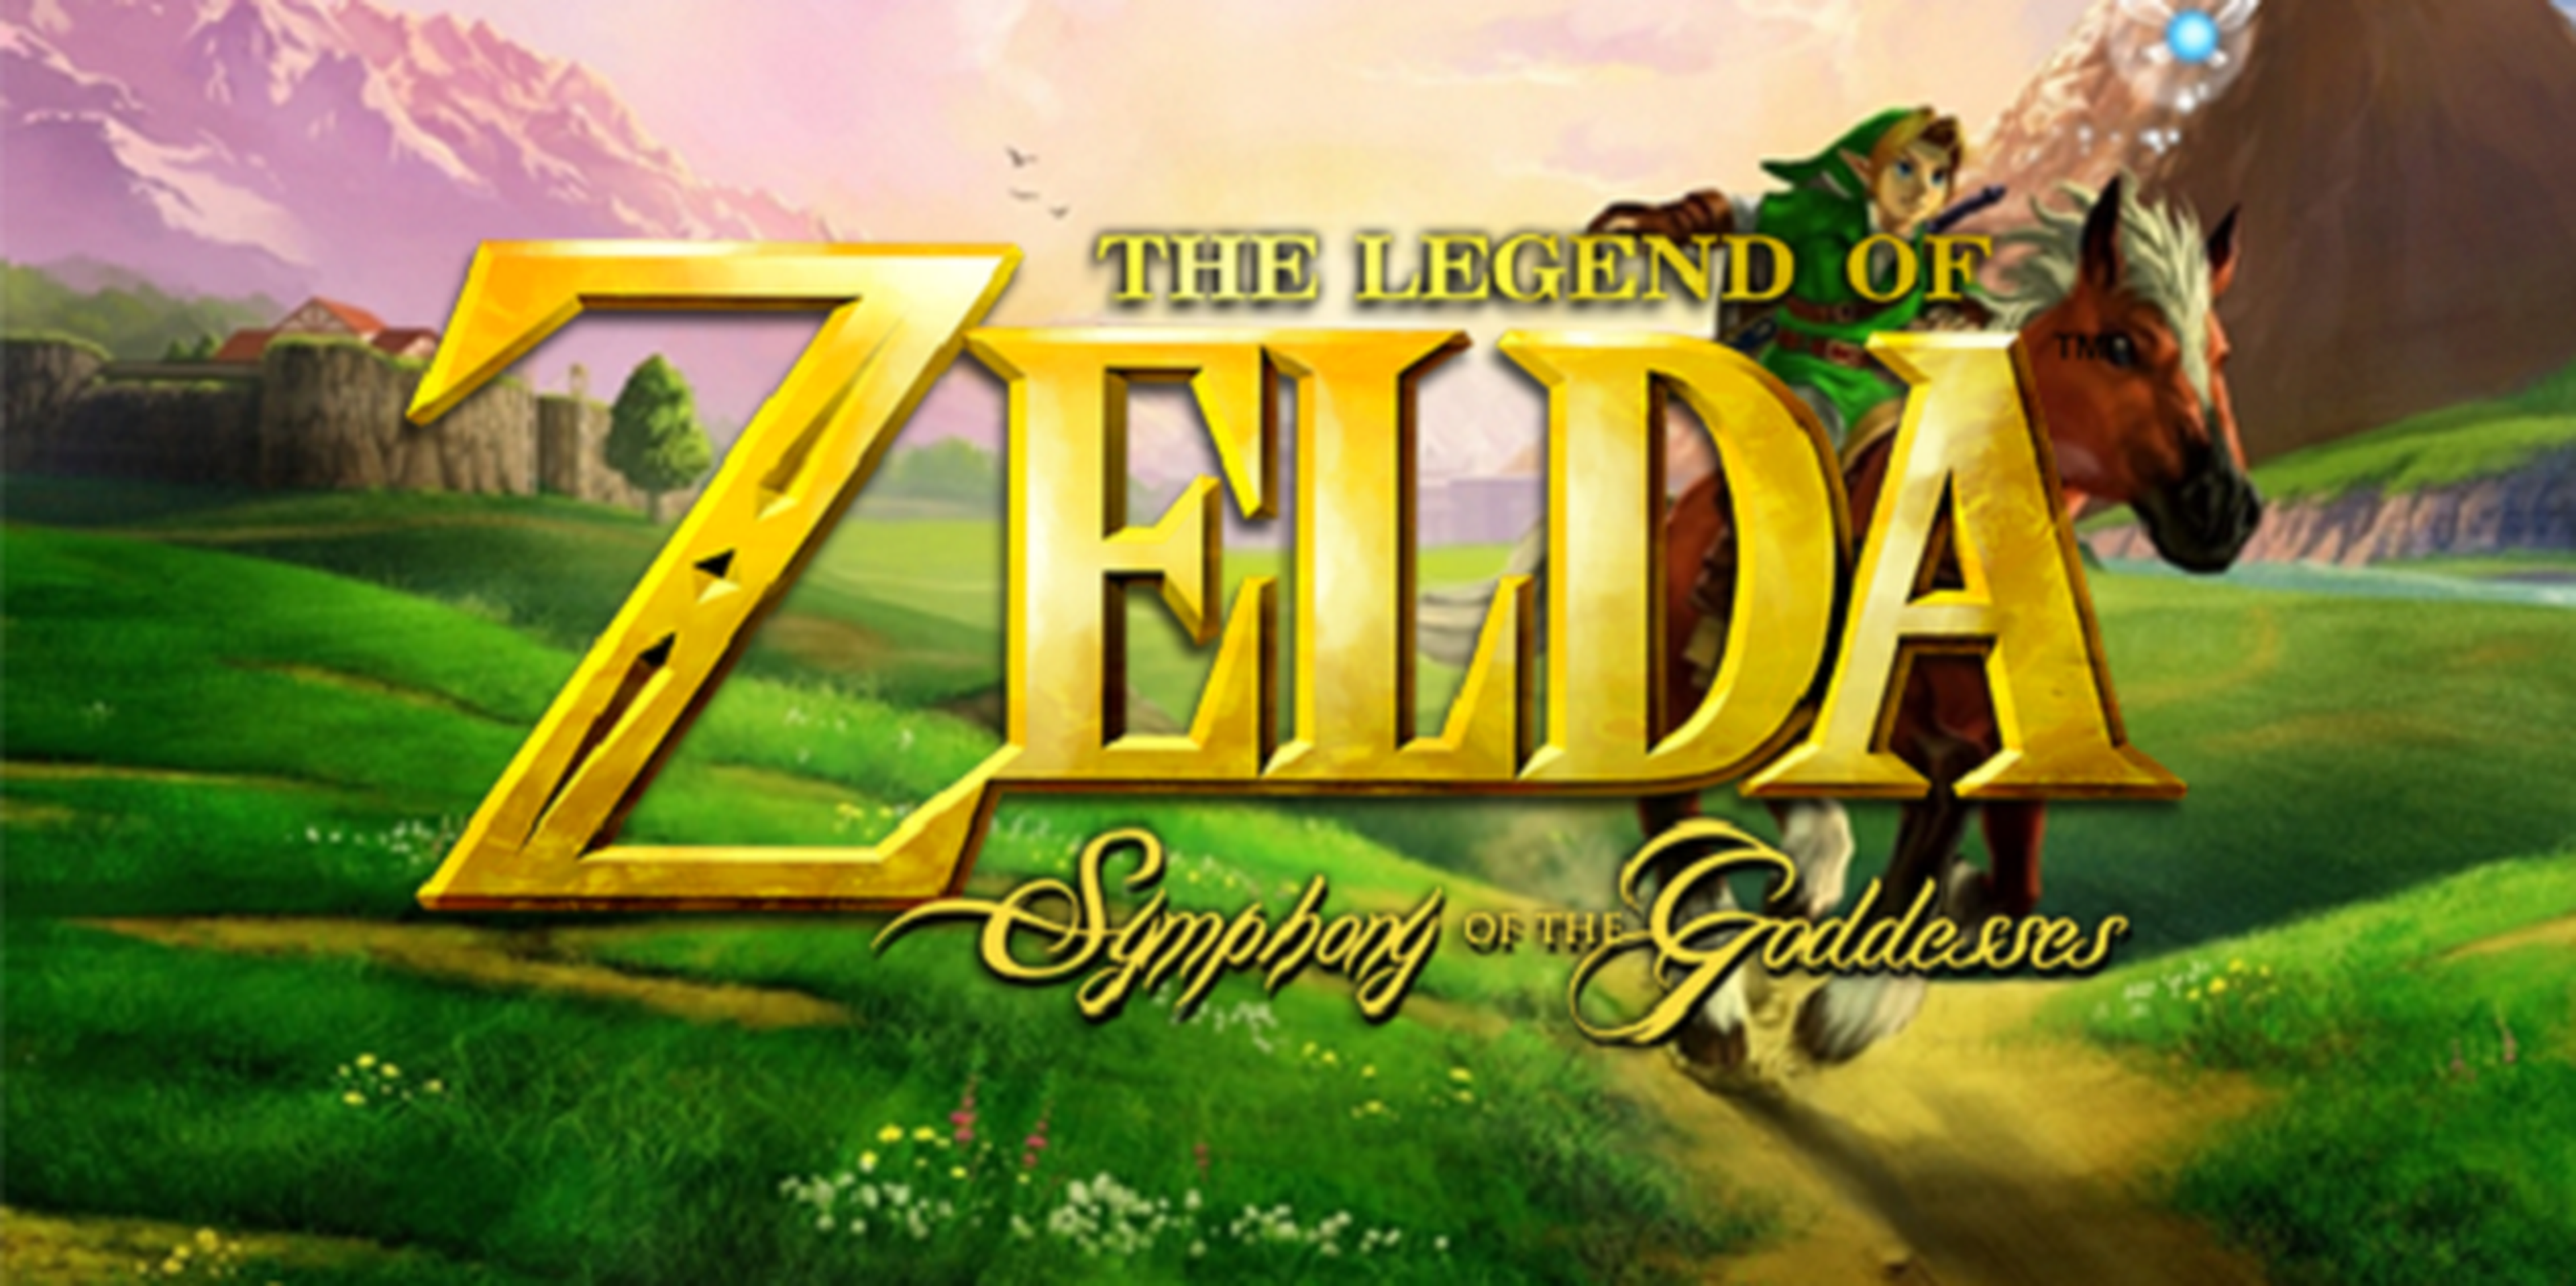 Entradas ya a la venta para la gira musical de The Legend of Zelda en España